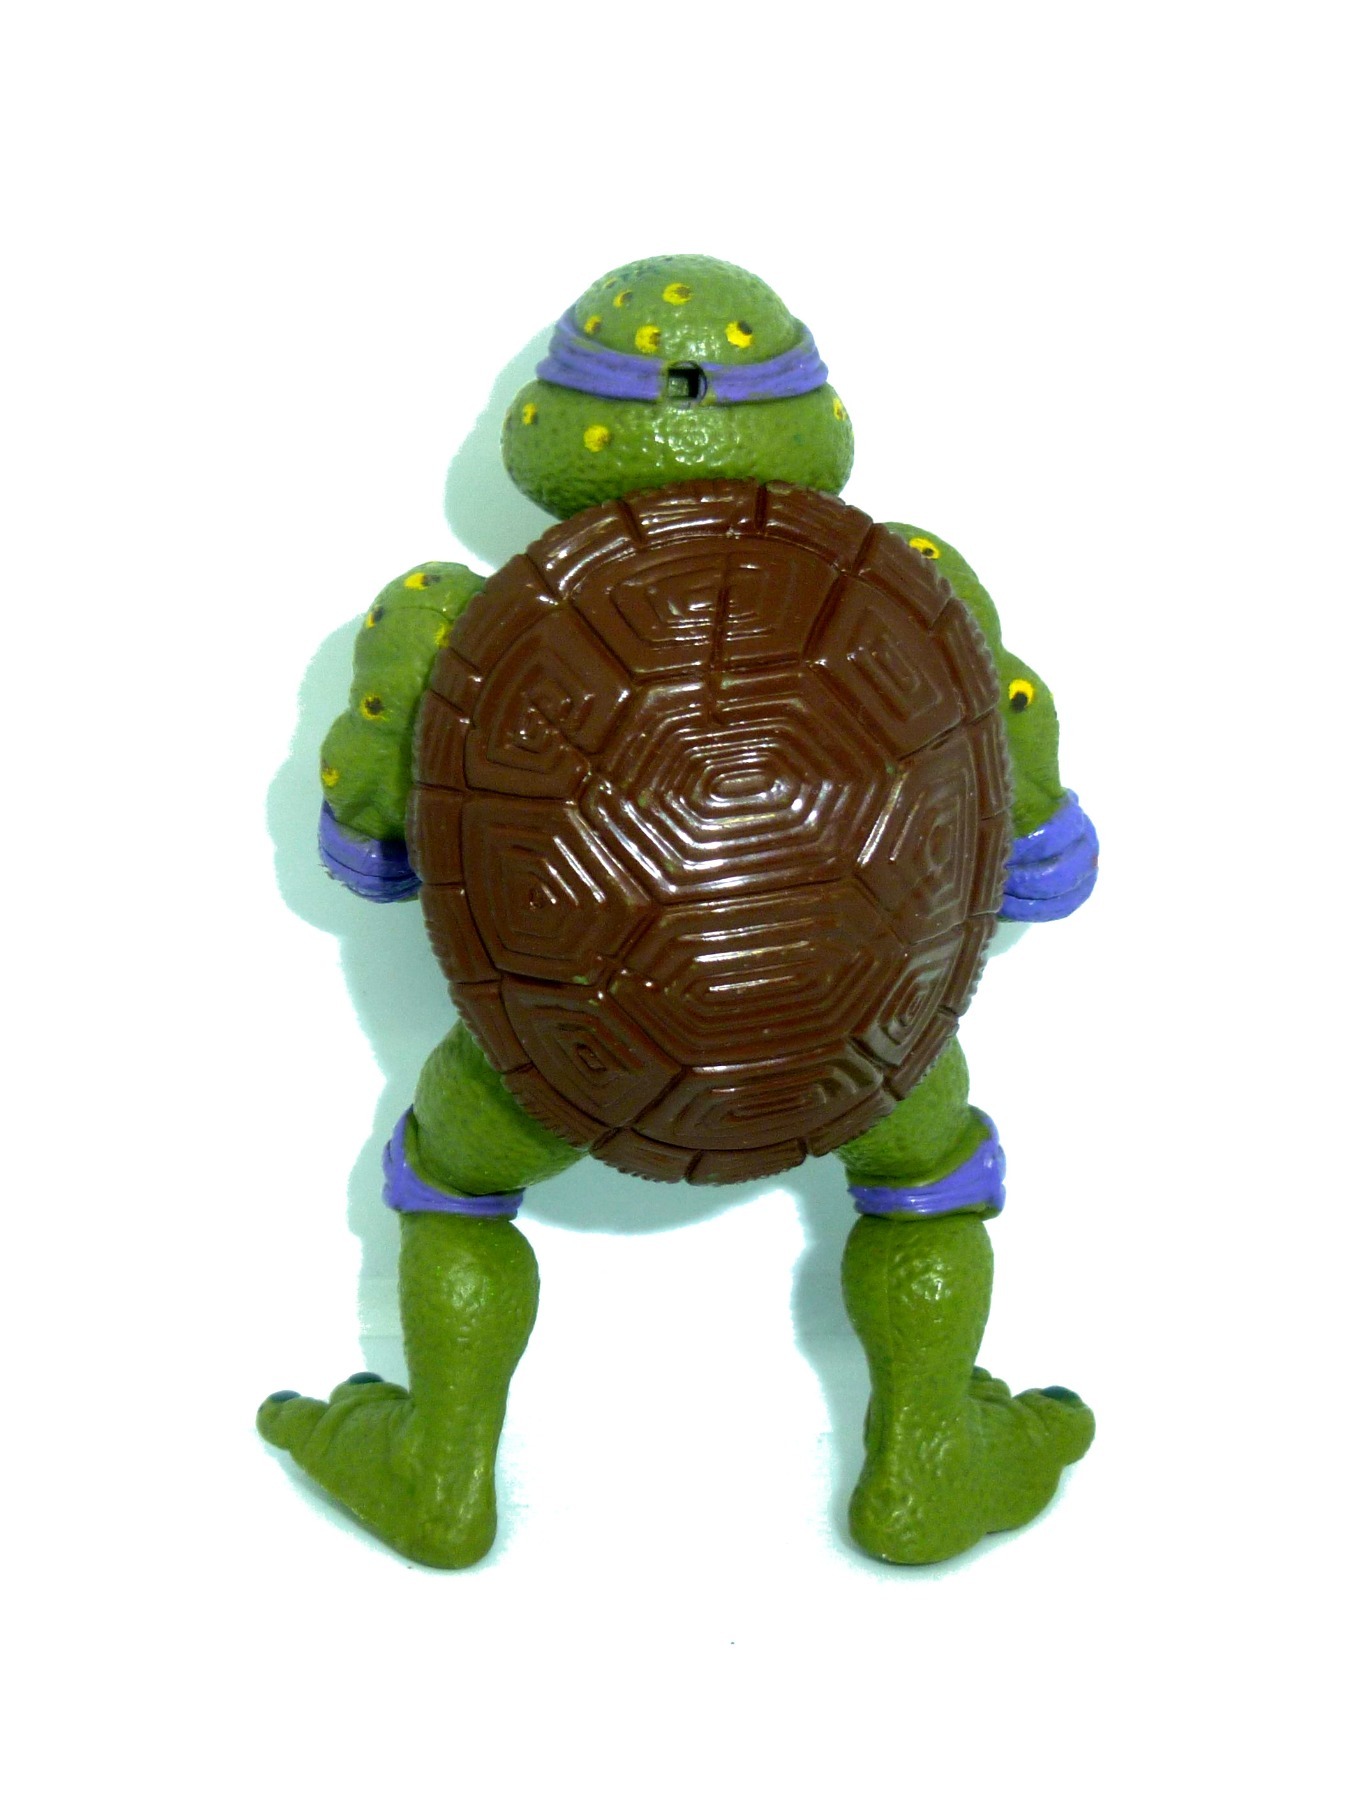 Movie Star Donatello Don 1992 Mirage Studios / Playmates Toys 2